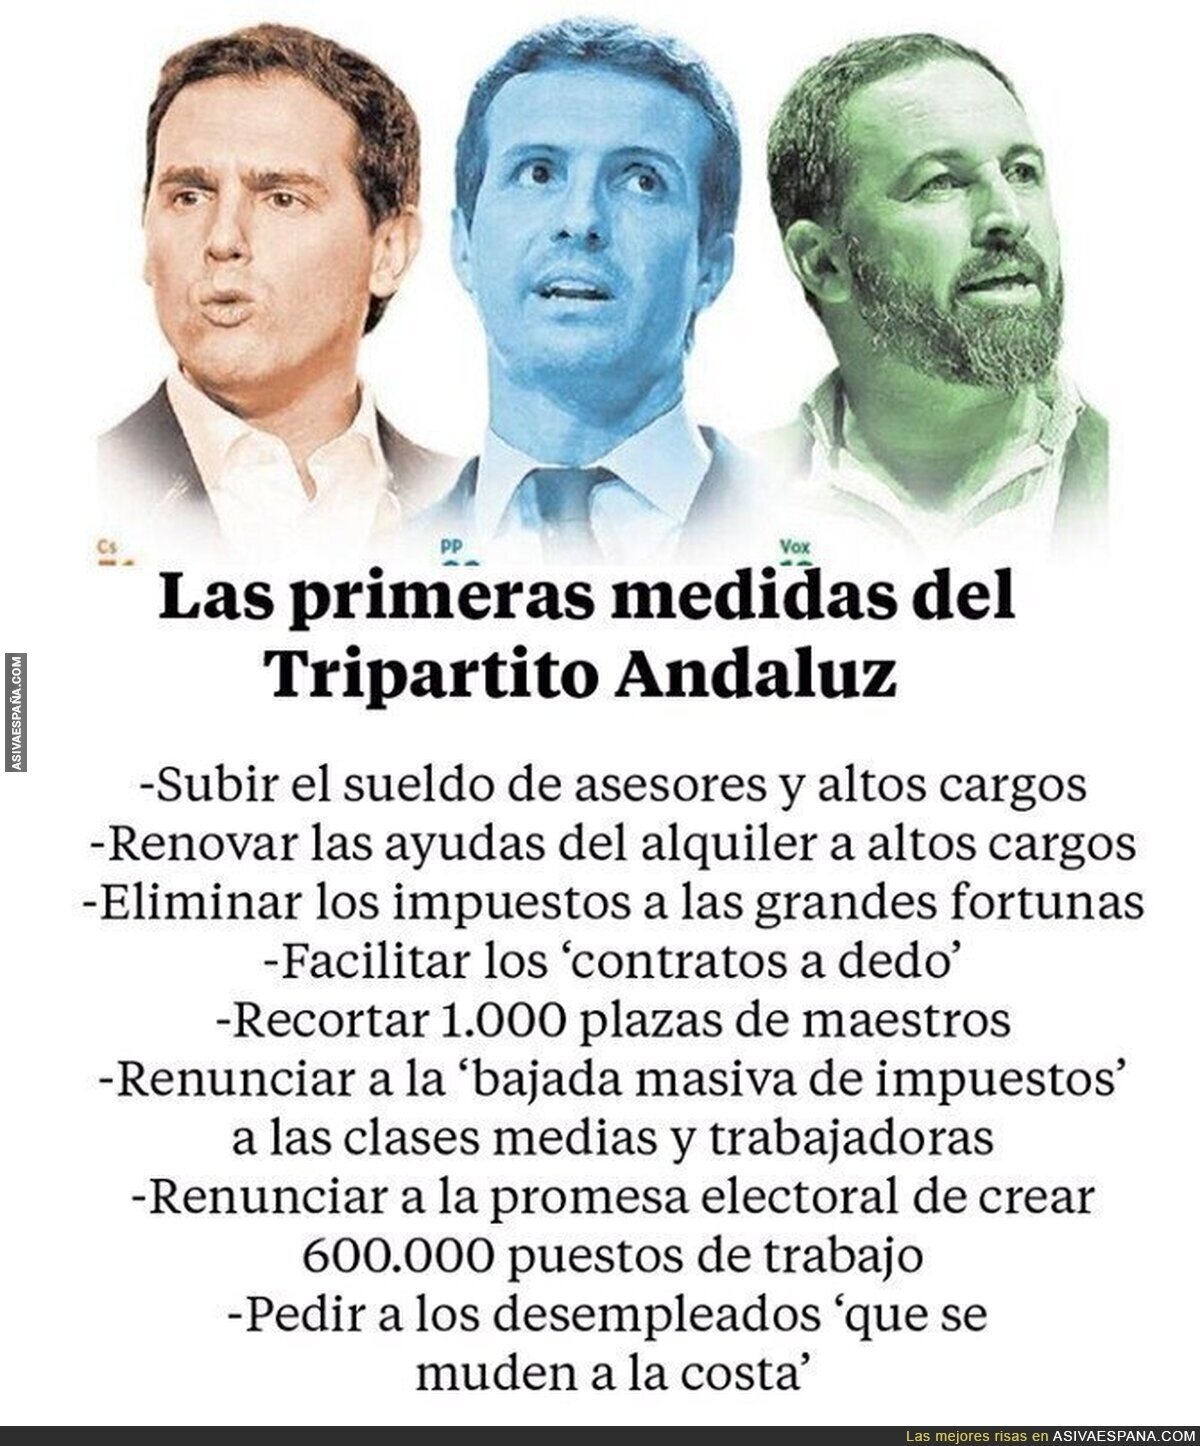 Las medidas para el pueblo andaluz de PP-Ciudadanos y VOX